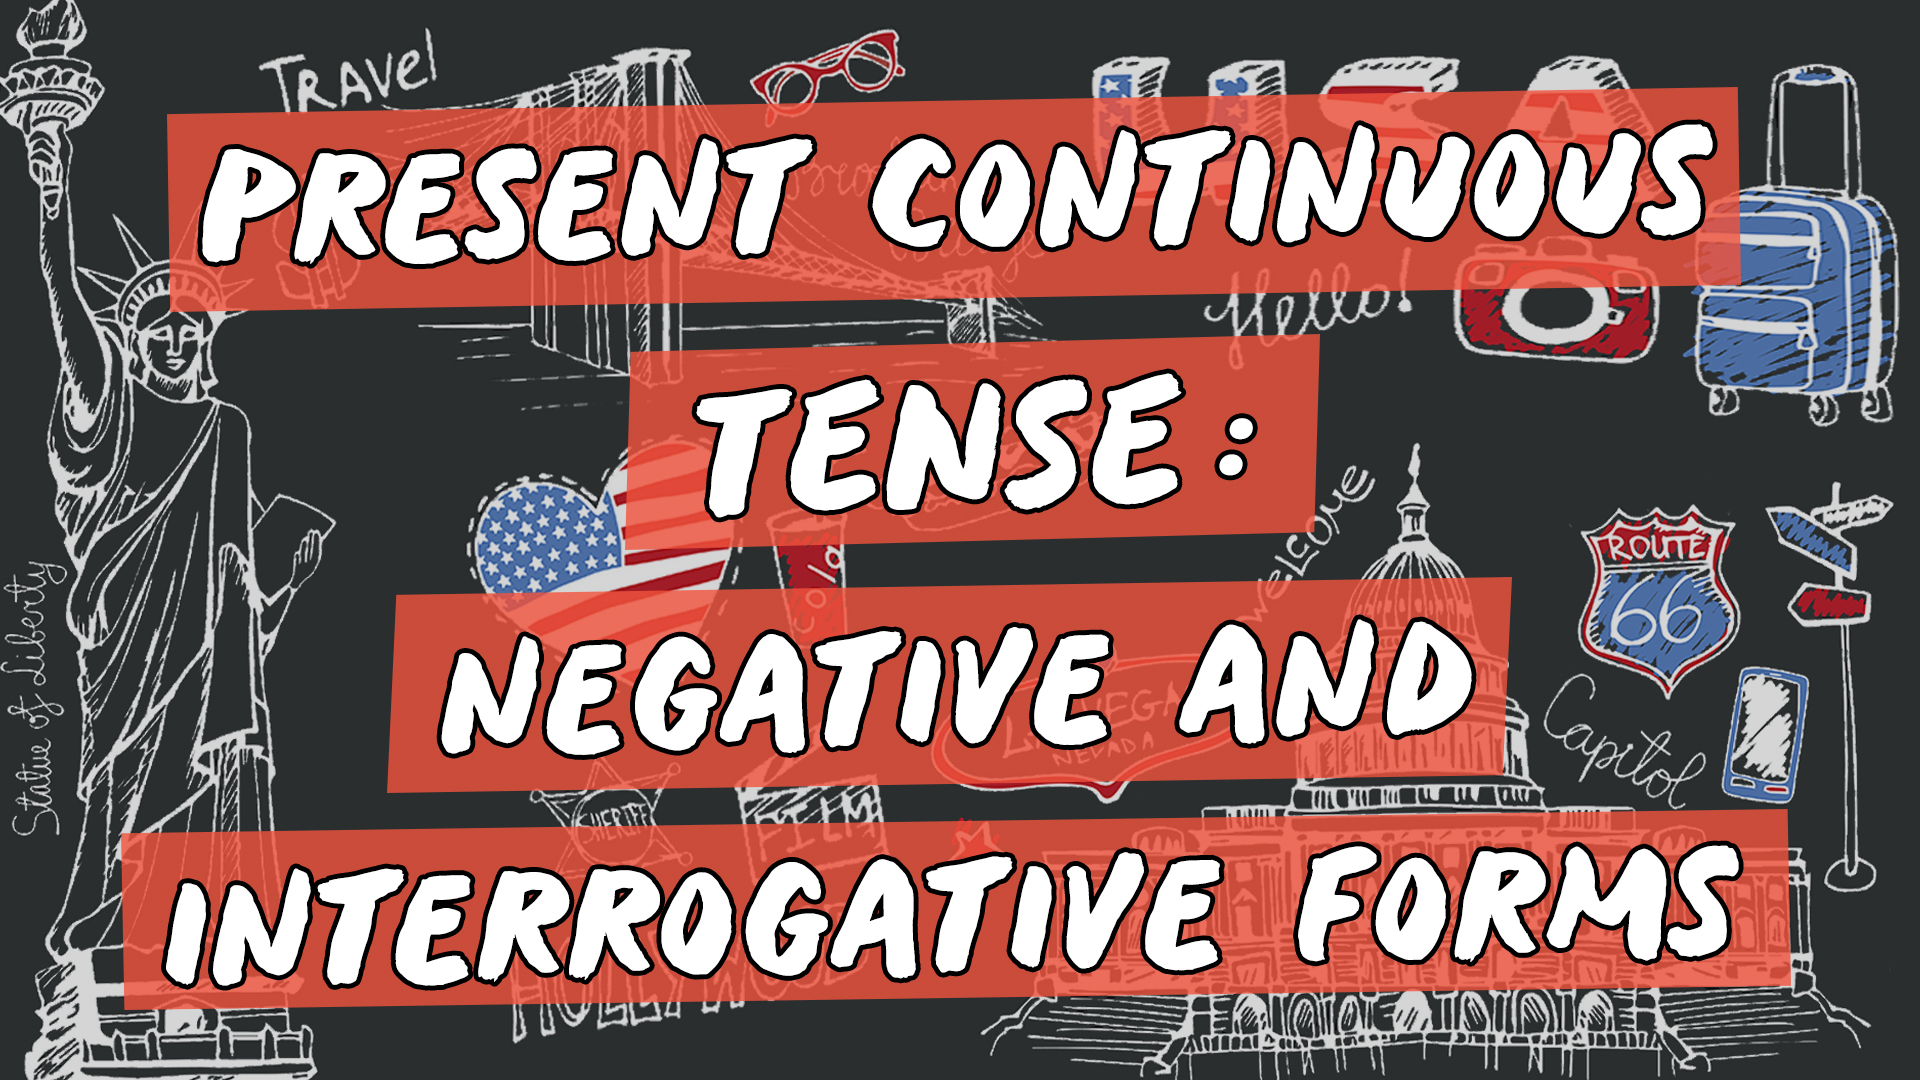 Escrito"Present Continuous Tense: Negative and Interrogative Forms" sobre representação de vários elementos da cultura do inglês americano.